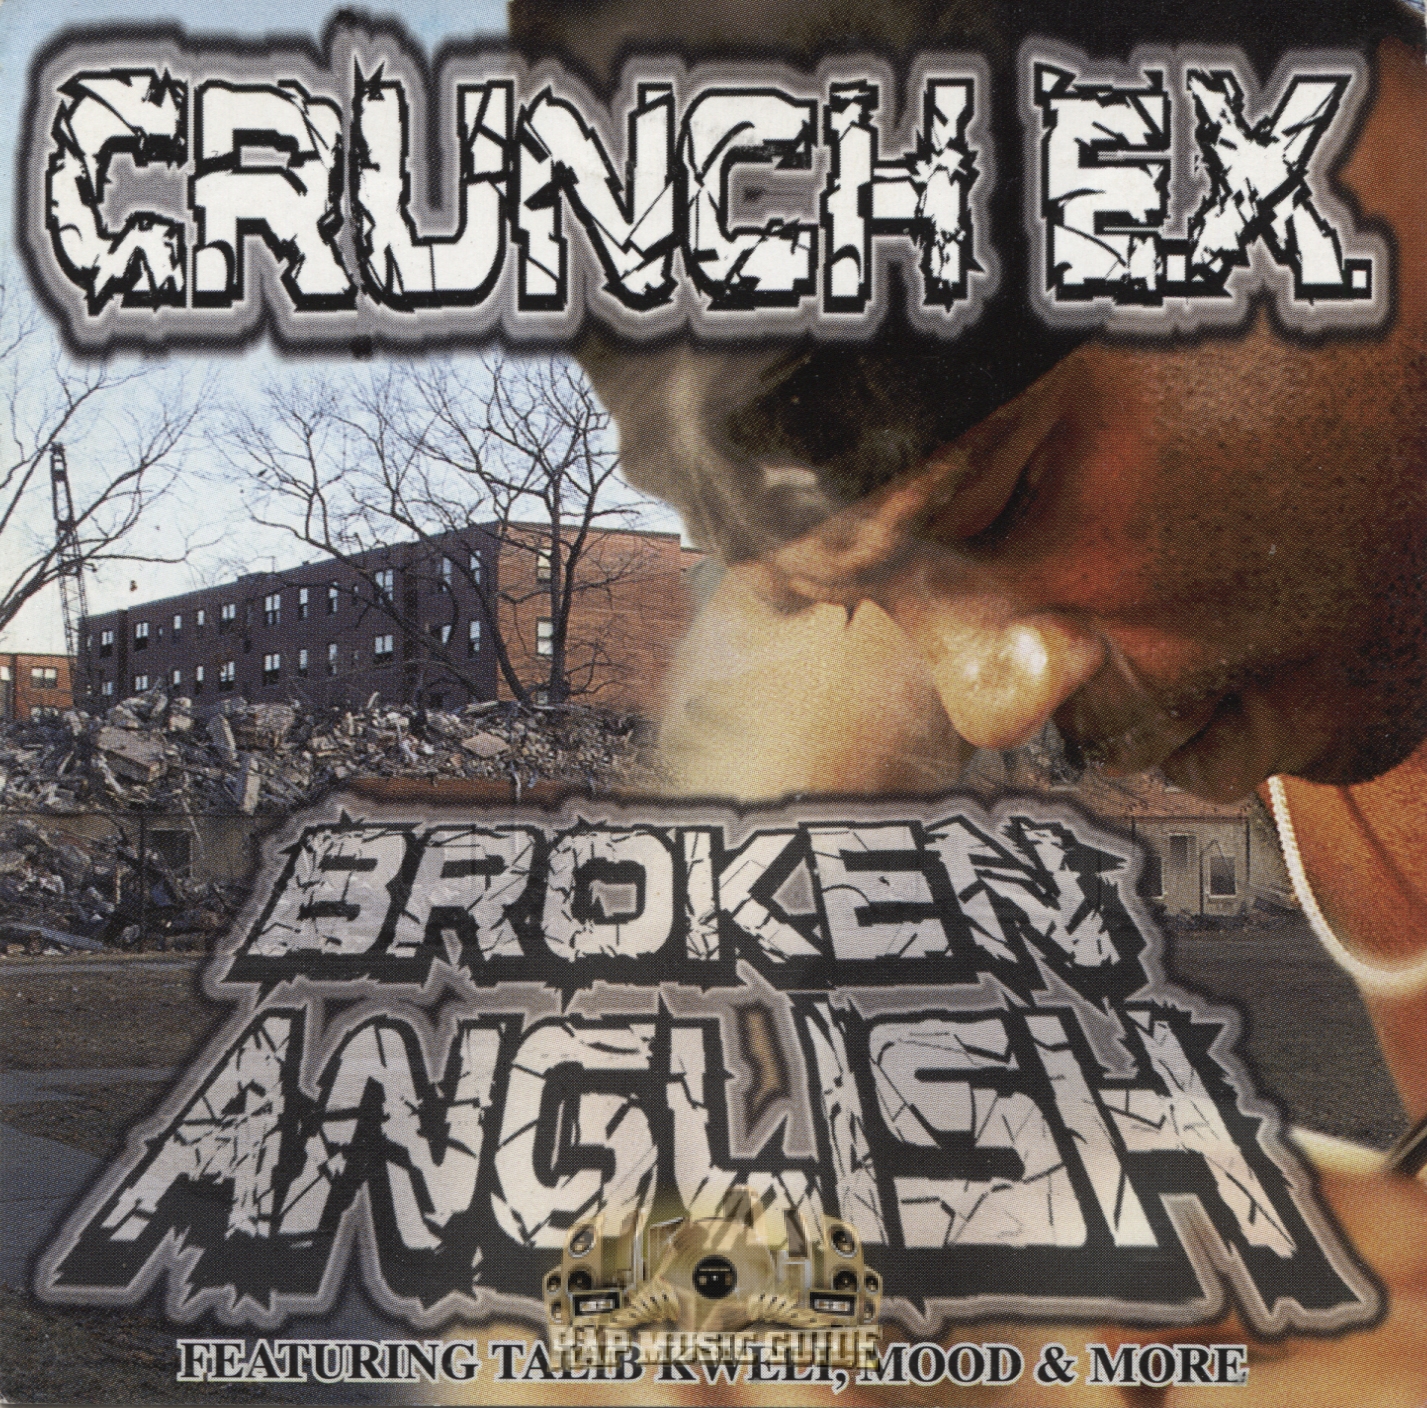 Crunch Rap. Break bit обложки.